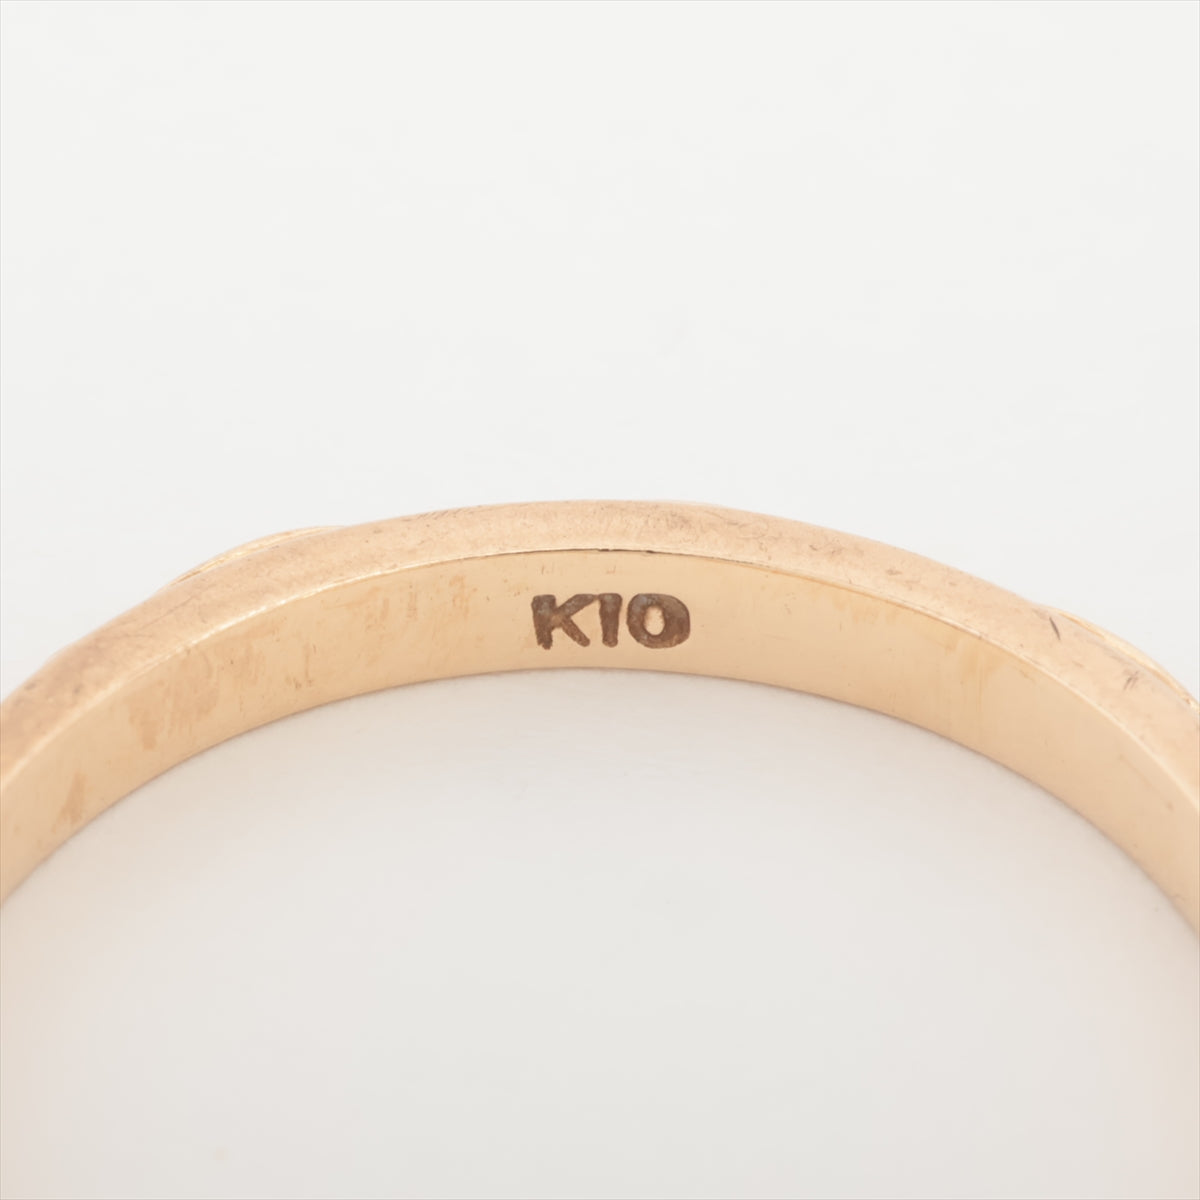 Agat Ring K10 (PG) 1.6g